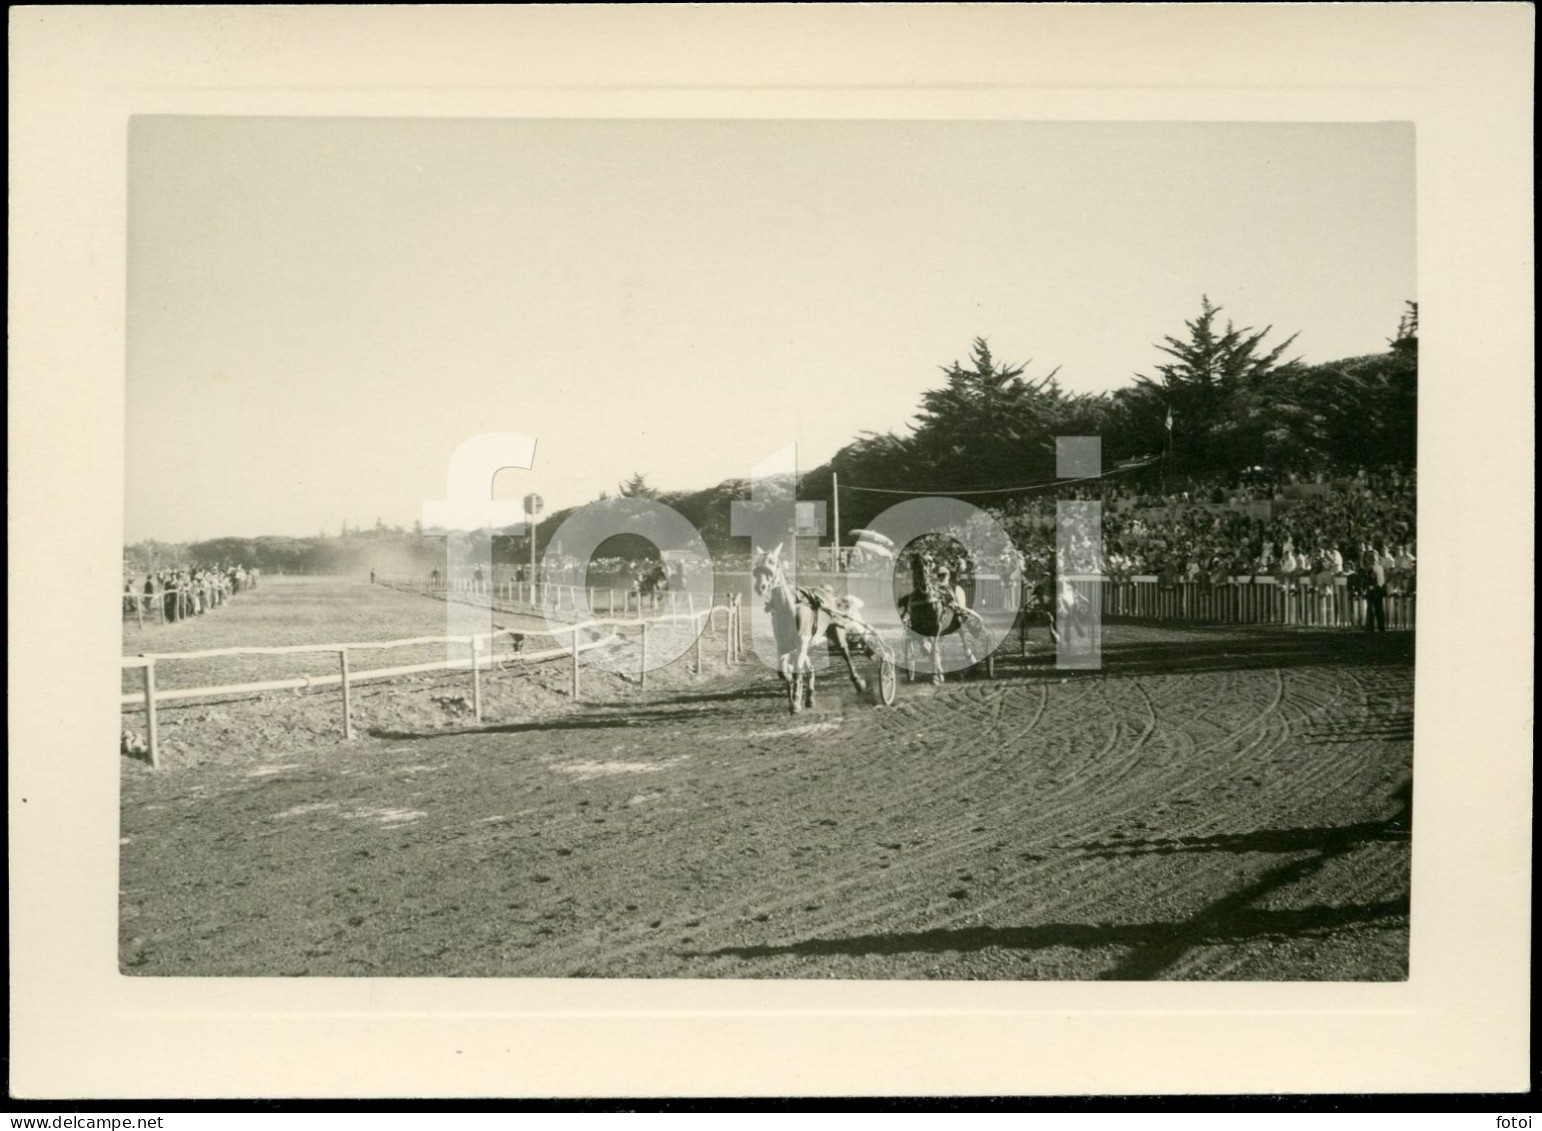 3 PHOTOS SET1955 REAL AMATEUR PHOTO FOTO CORRIDA CAVALOS COURSE CHEVAUX CHEVAL HORSE RACE HORSES CASCAIS PORTUGAL AT105